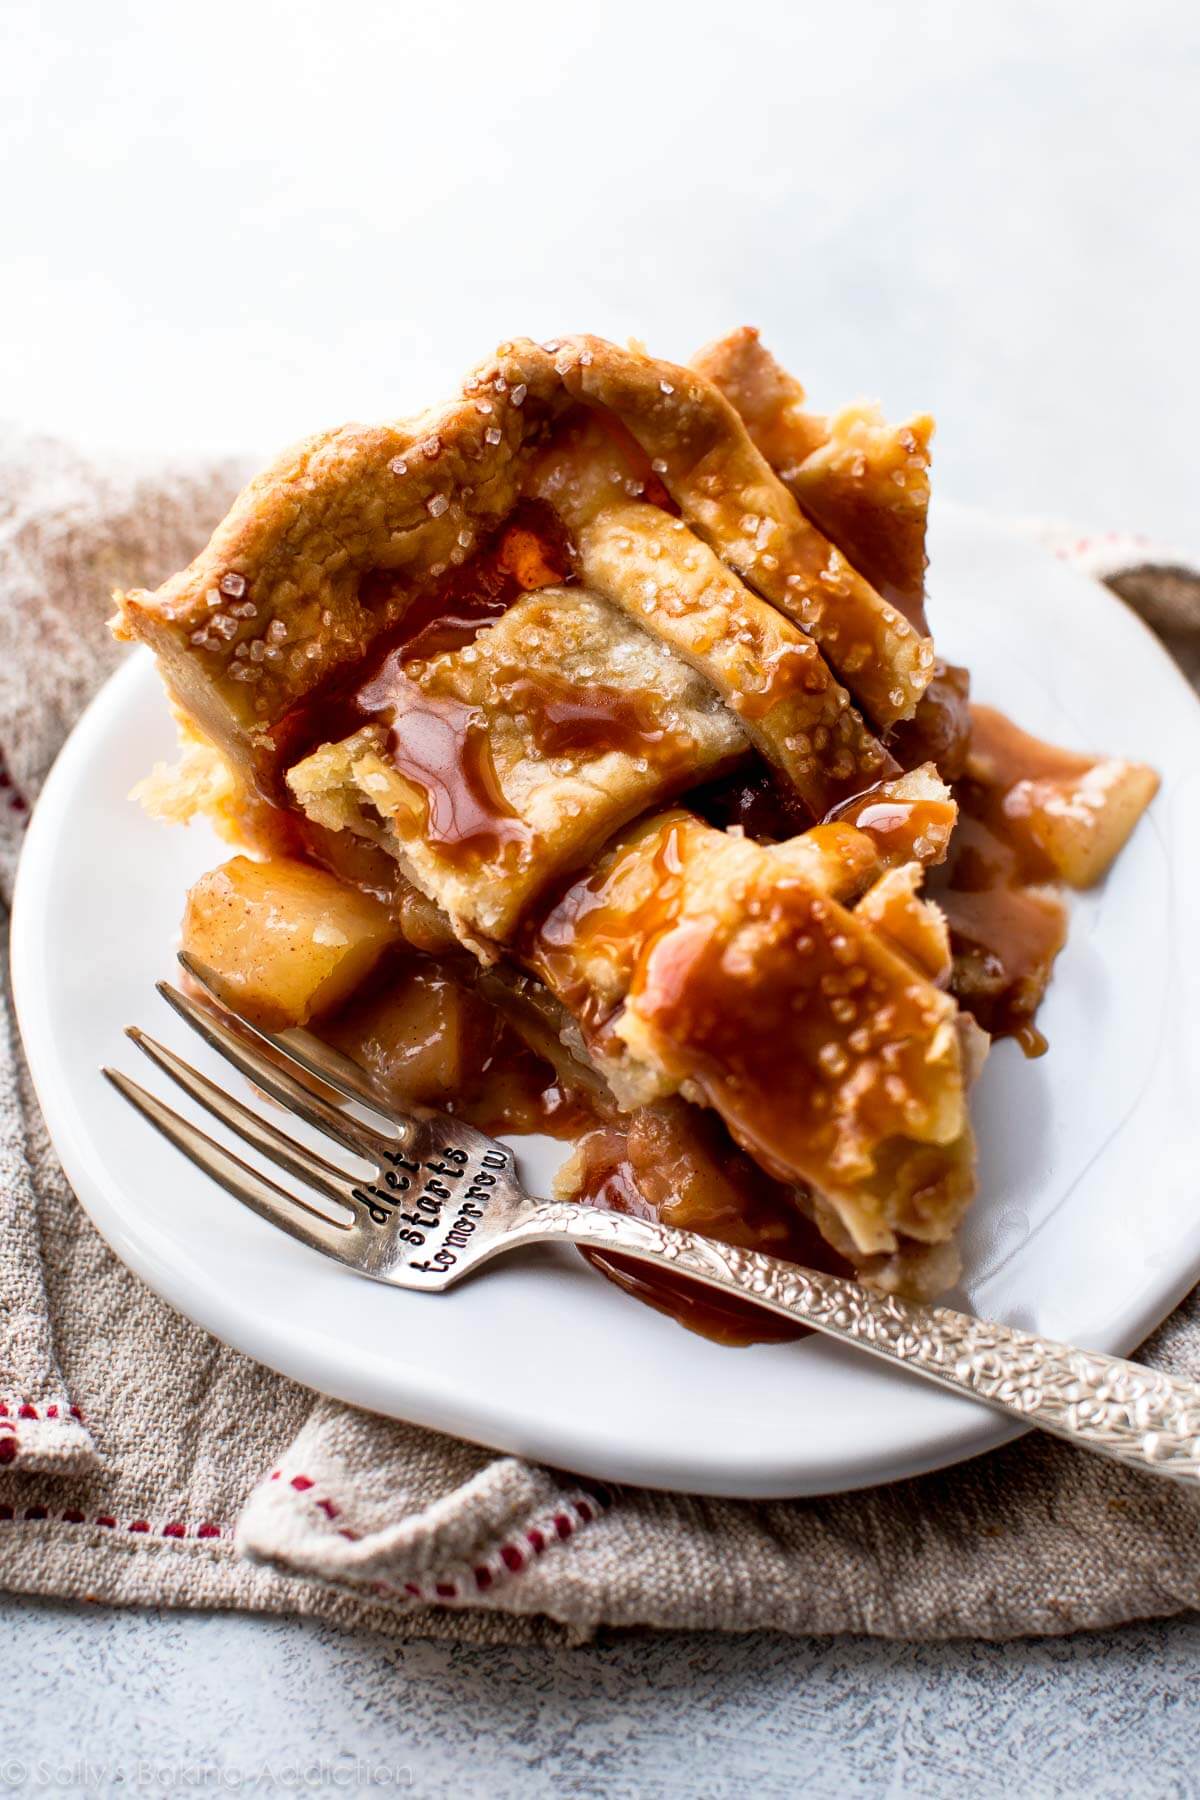 Apple and roasted pear lattice pie